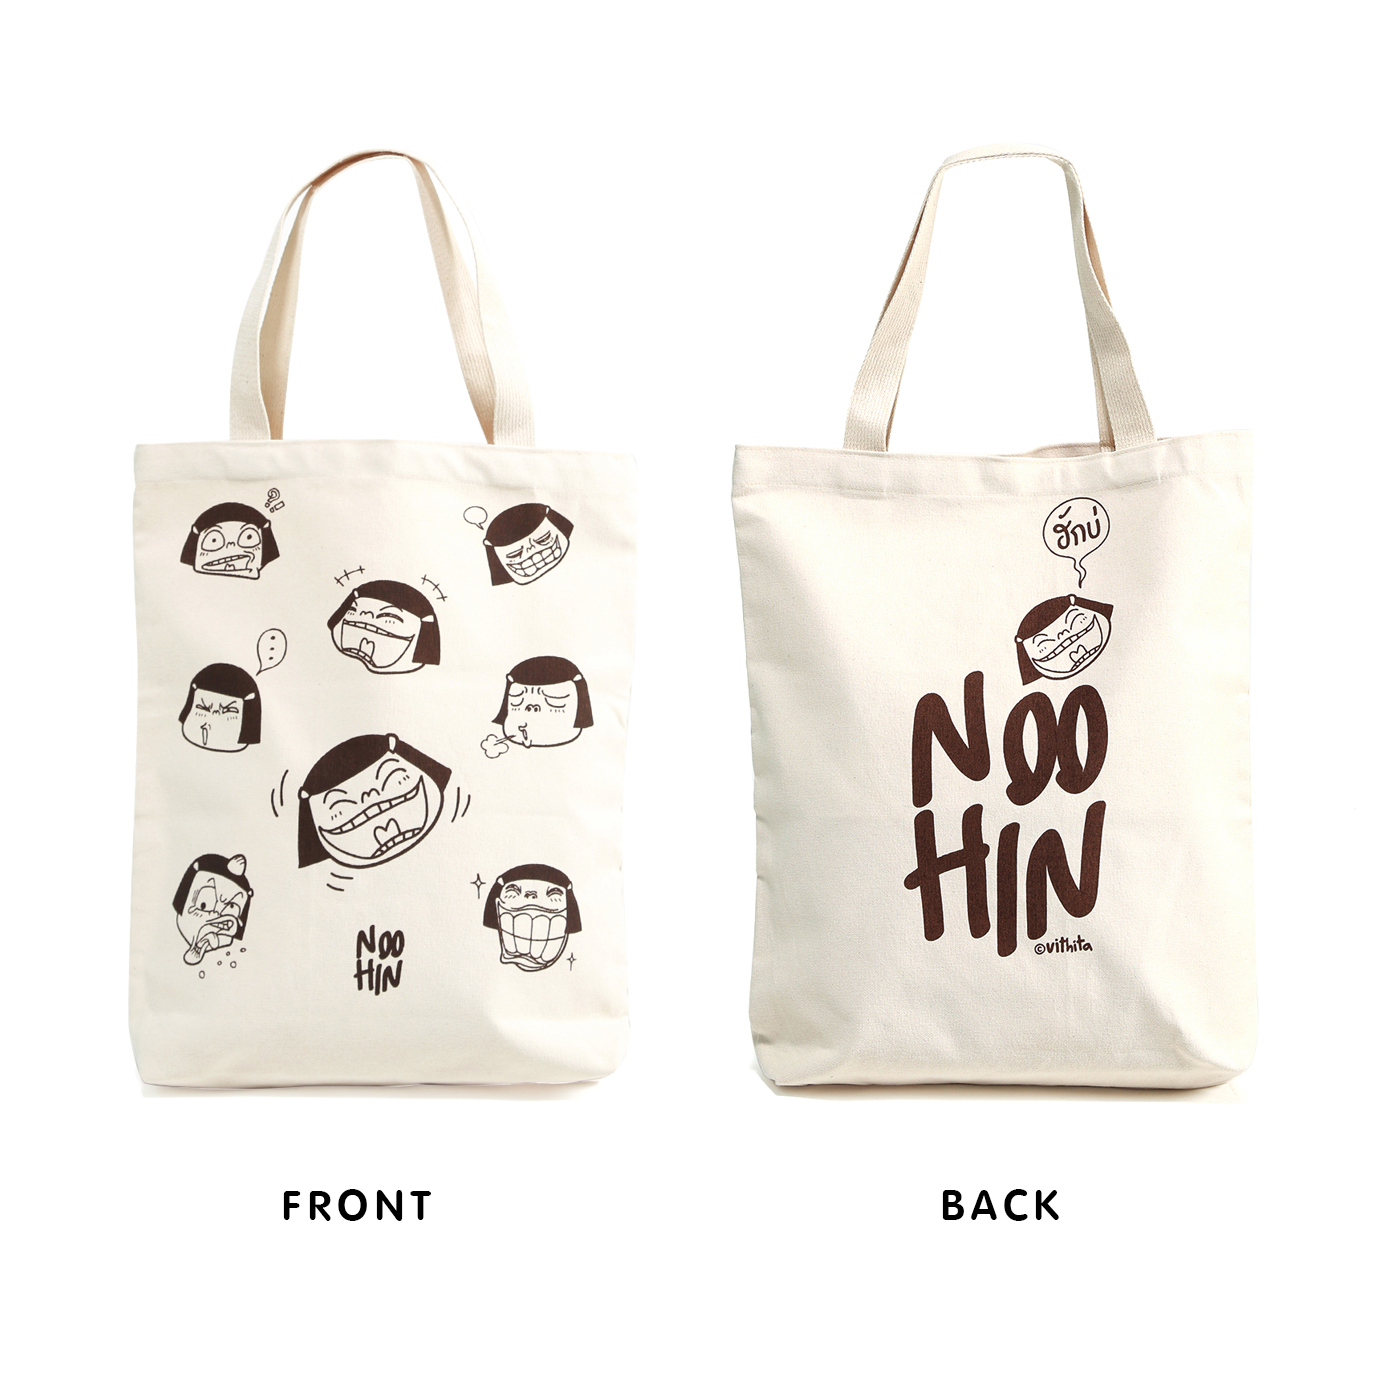 Noo Hin Tote Bag